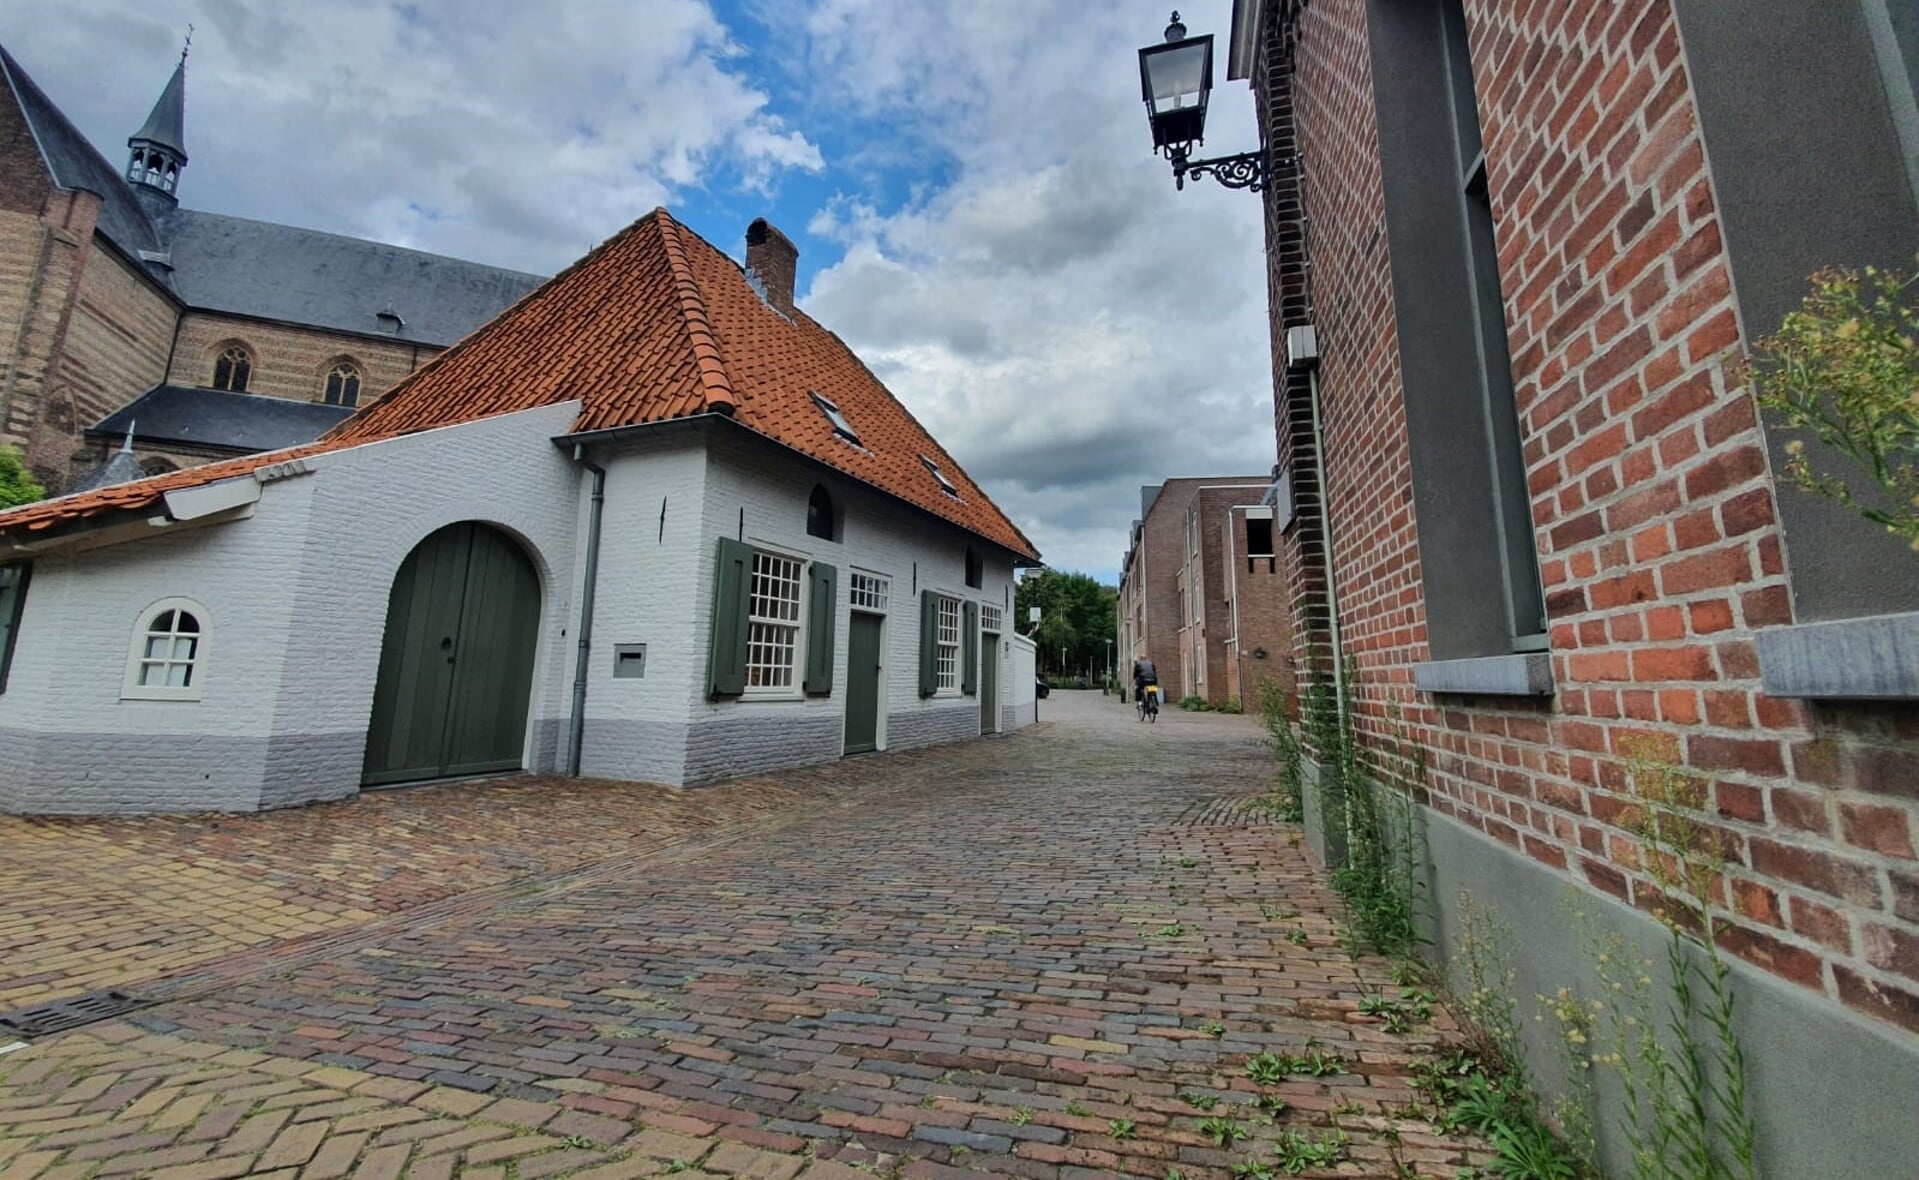 Bewoners van de omgeving de Koppel en Duinendaal kunnen via deze weg langs het Kanunnikenhuisje de Mgr. Bekkersstraat bereiken. Zo worden zij ontsloten van hun wijk.